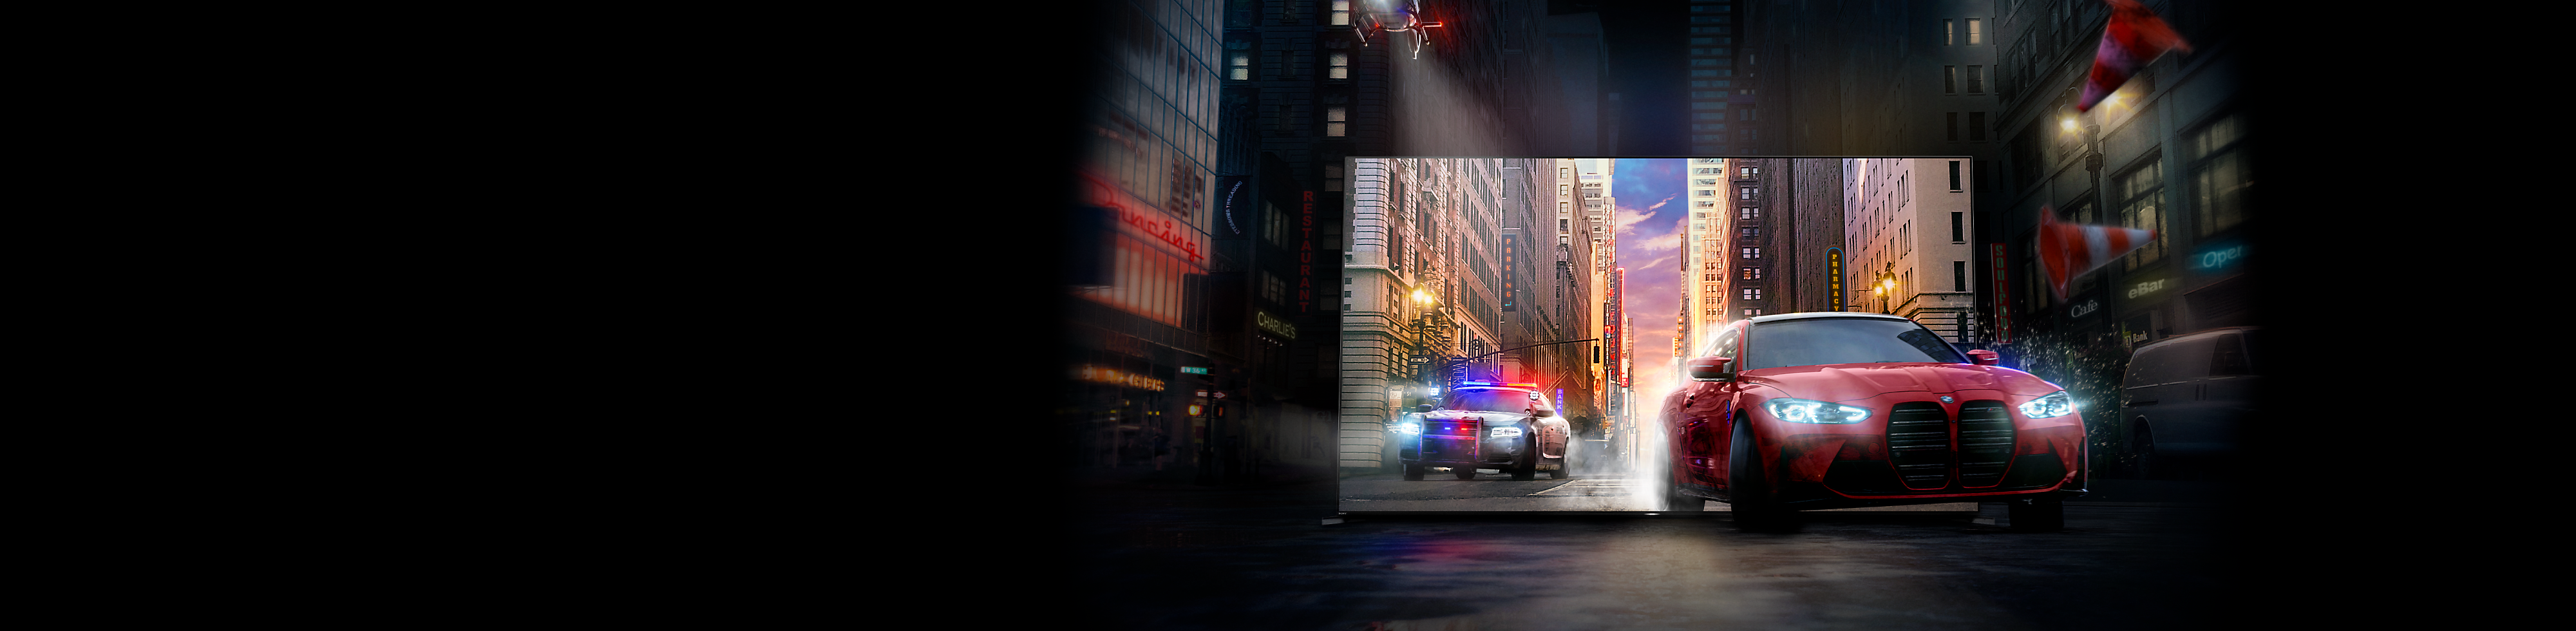 Policijski automobil u potjeri za crvenim automobilom, iskaču iz zaslona BRAVIA televizora na gradsku cestu